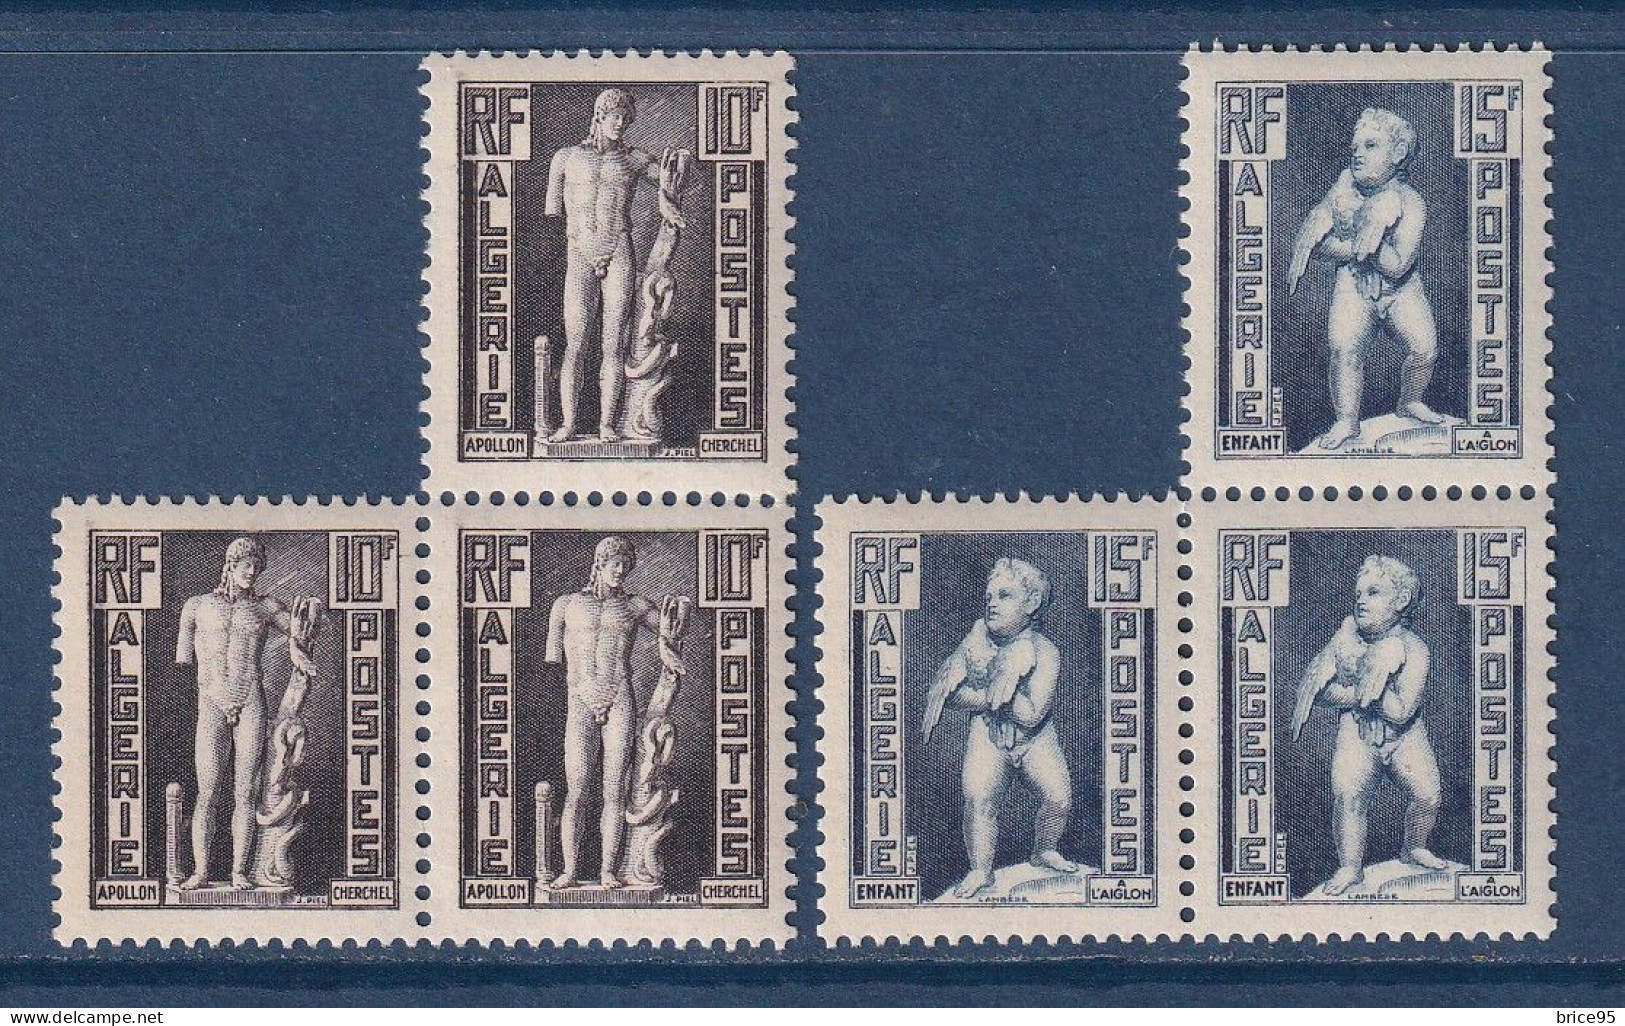 Algérie - YT N° 288 Et 290 ** - Neuf Sans Charnière - 1952 - Unused Stamps